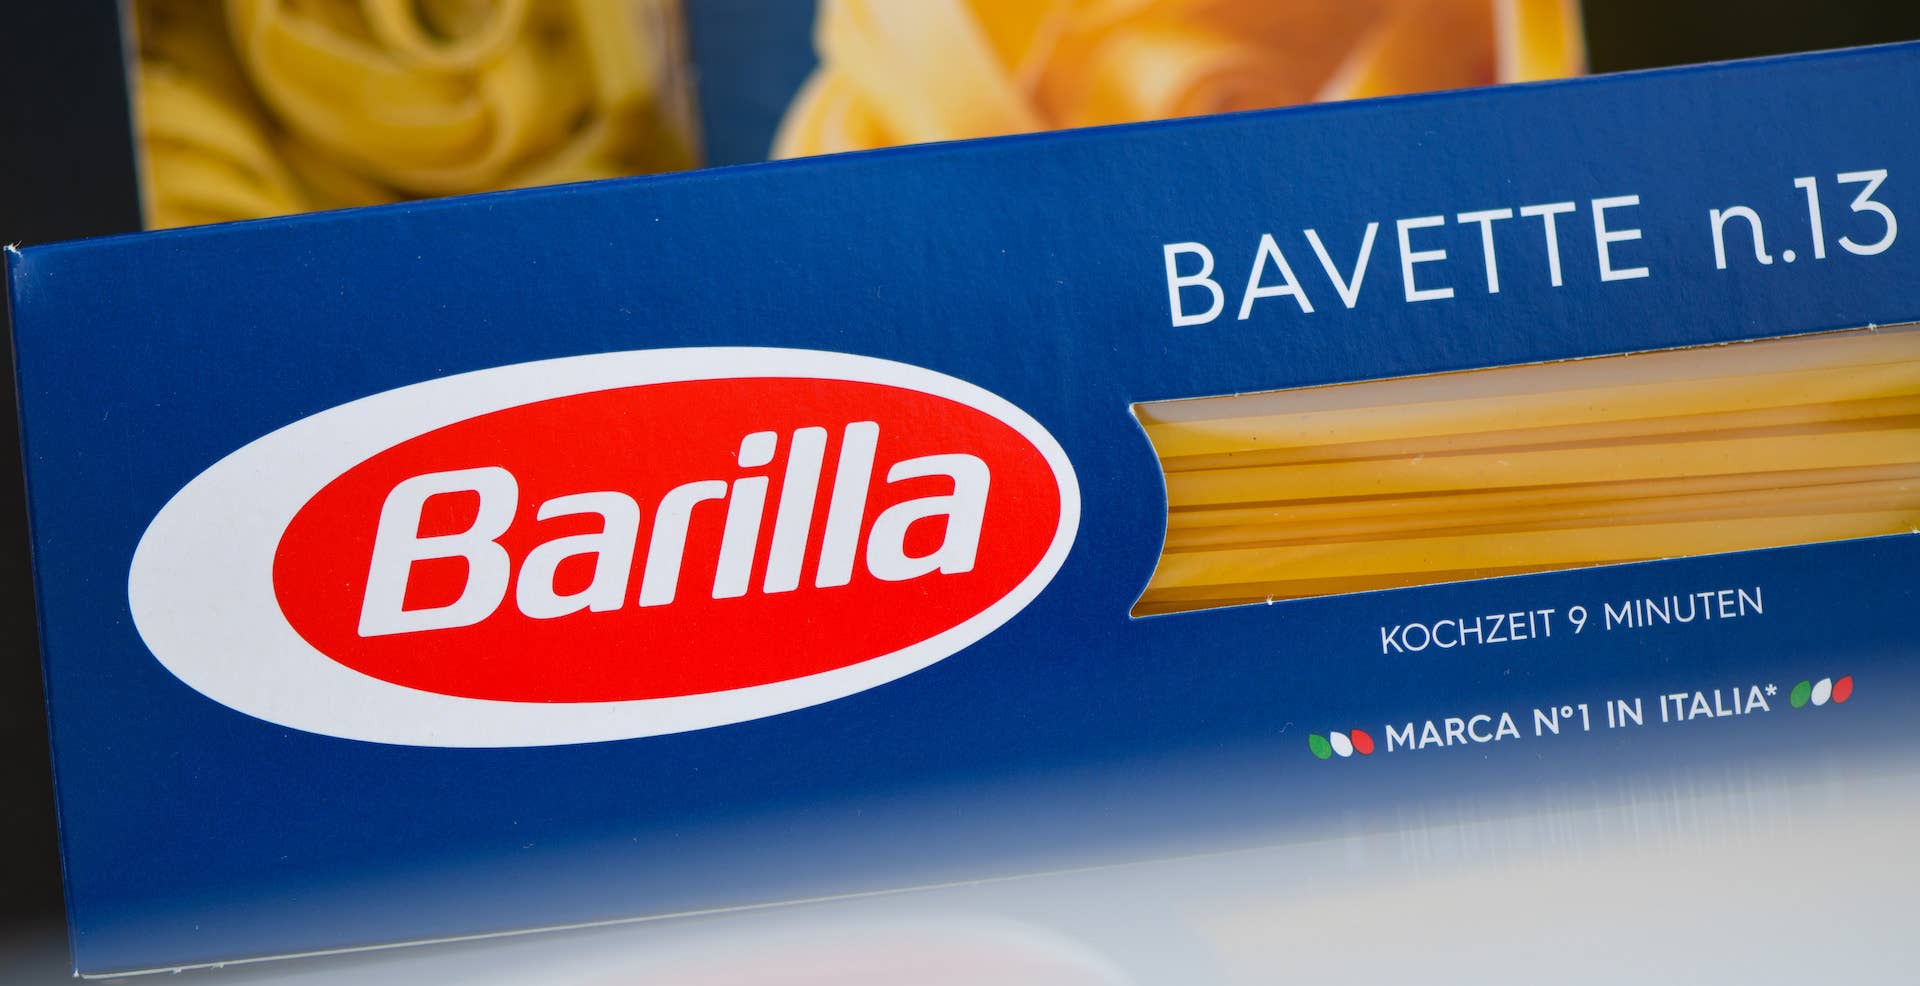 Box of Barilla brand pasta